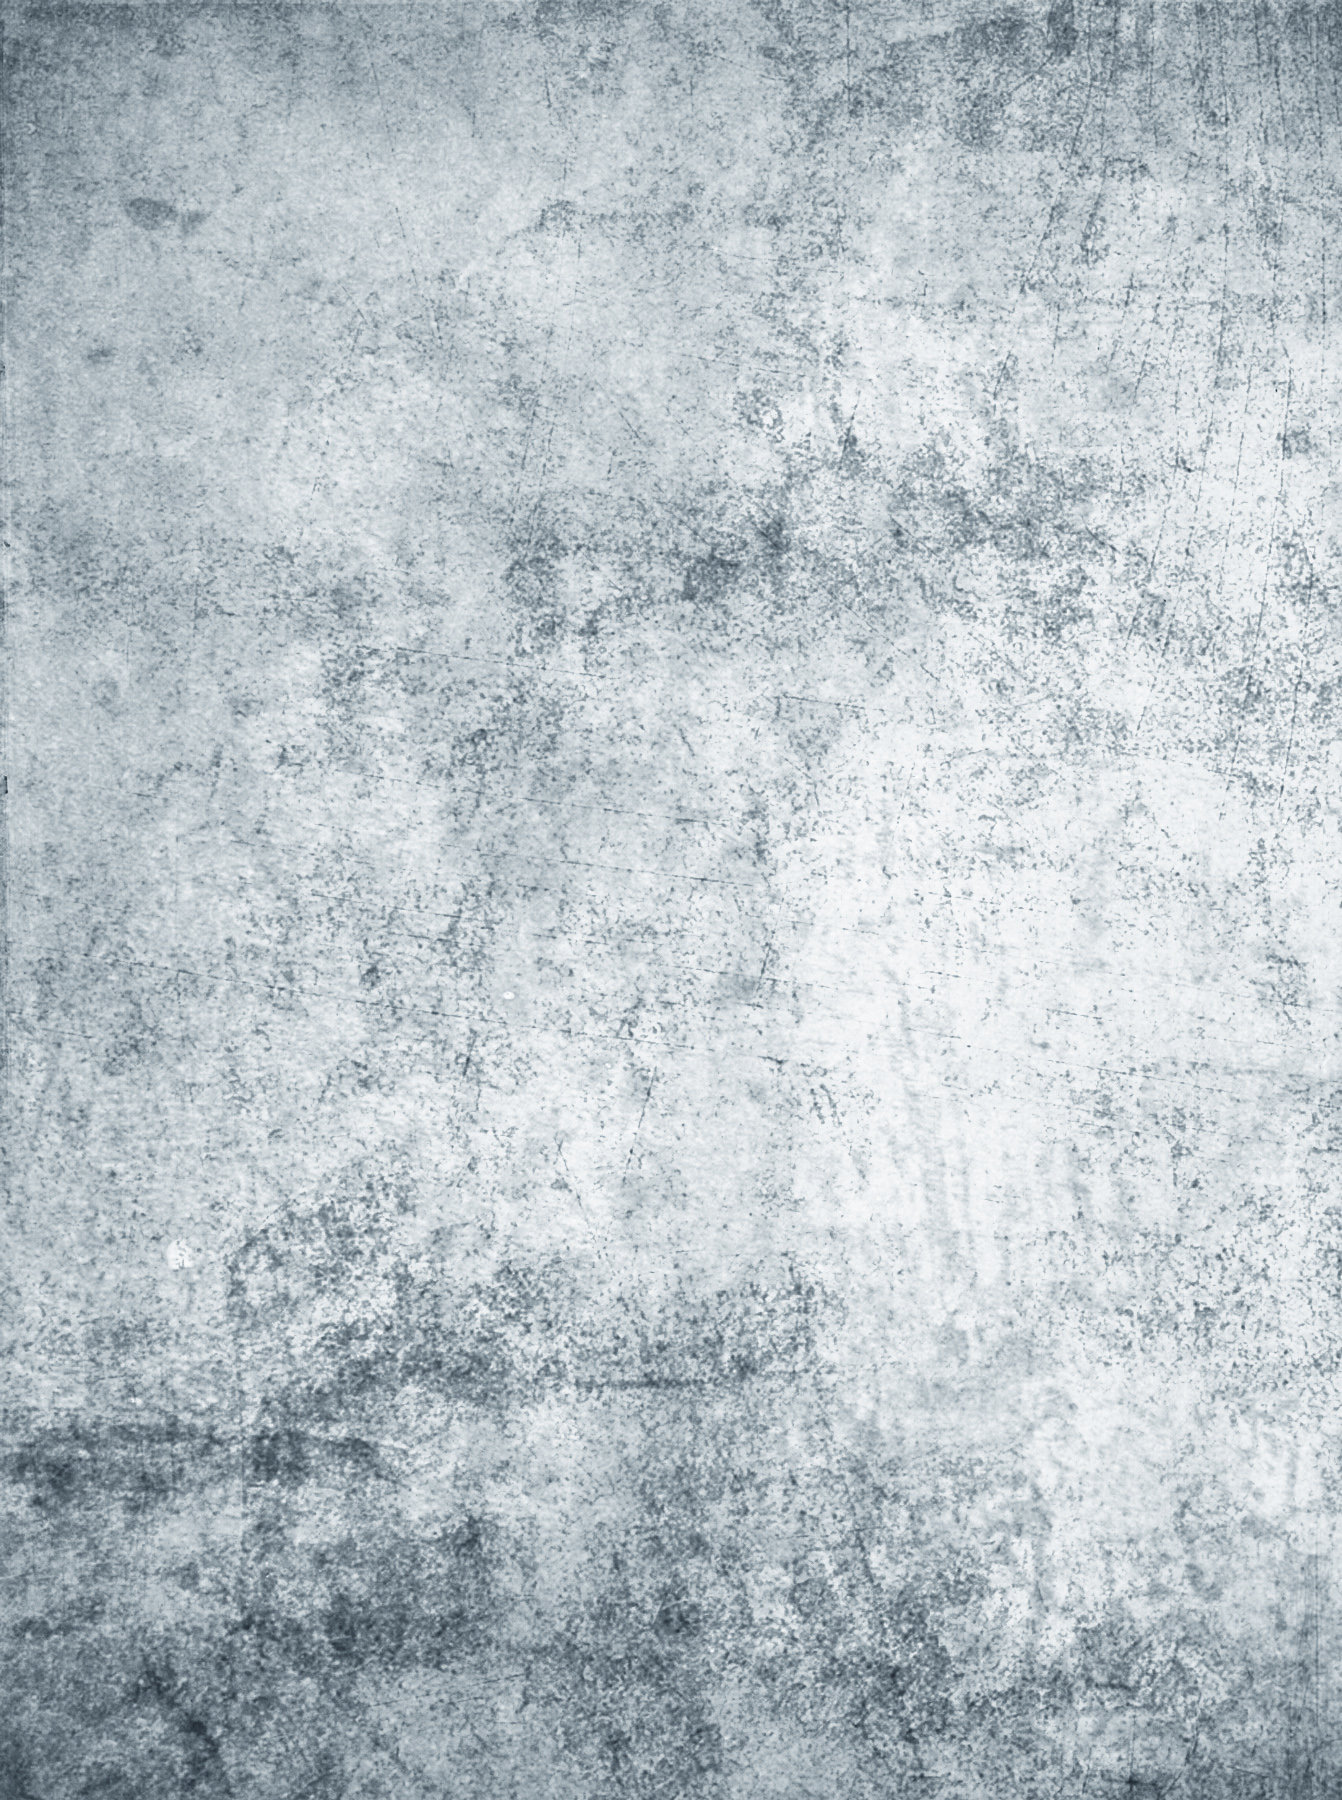 UNRESTRICTED - Digital Grunge Texture 14 by frozenstocks on DeviantArt